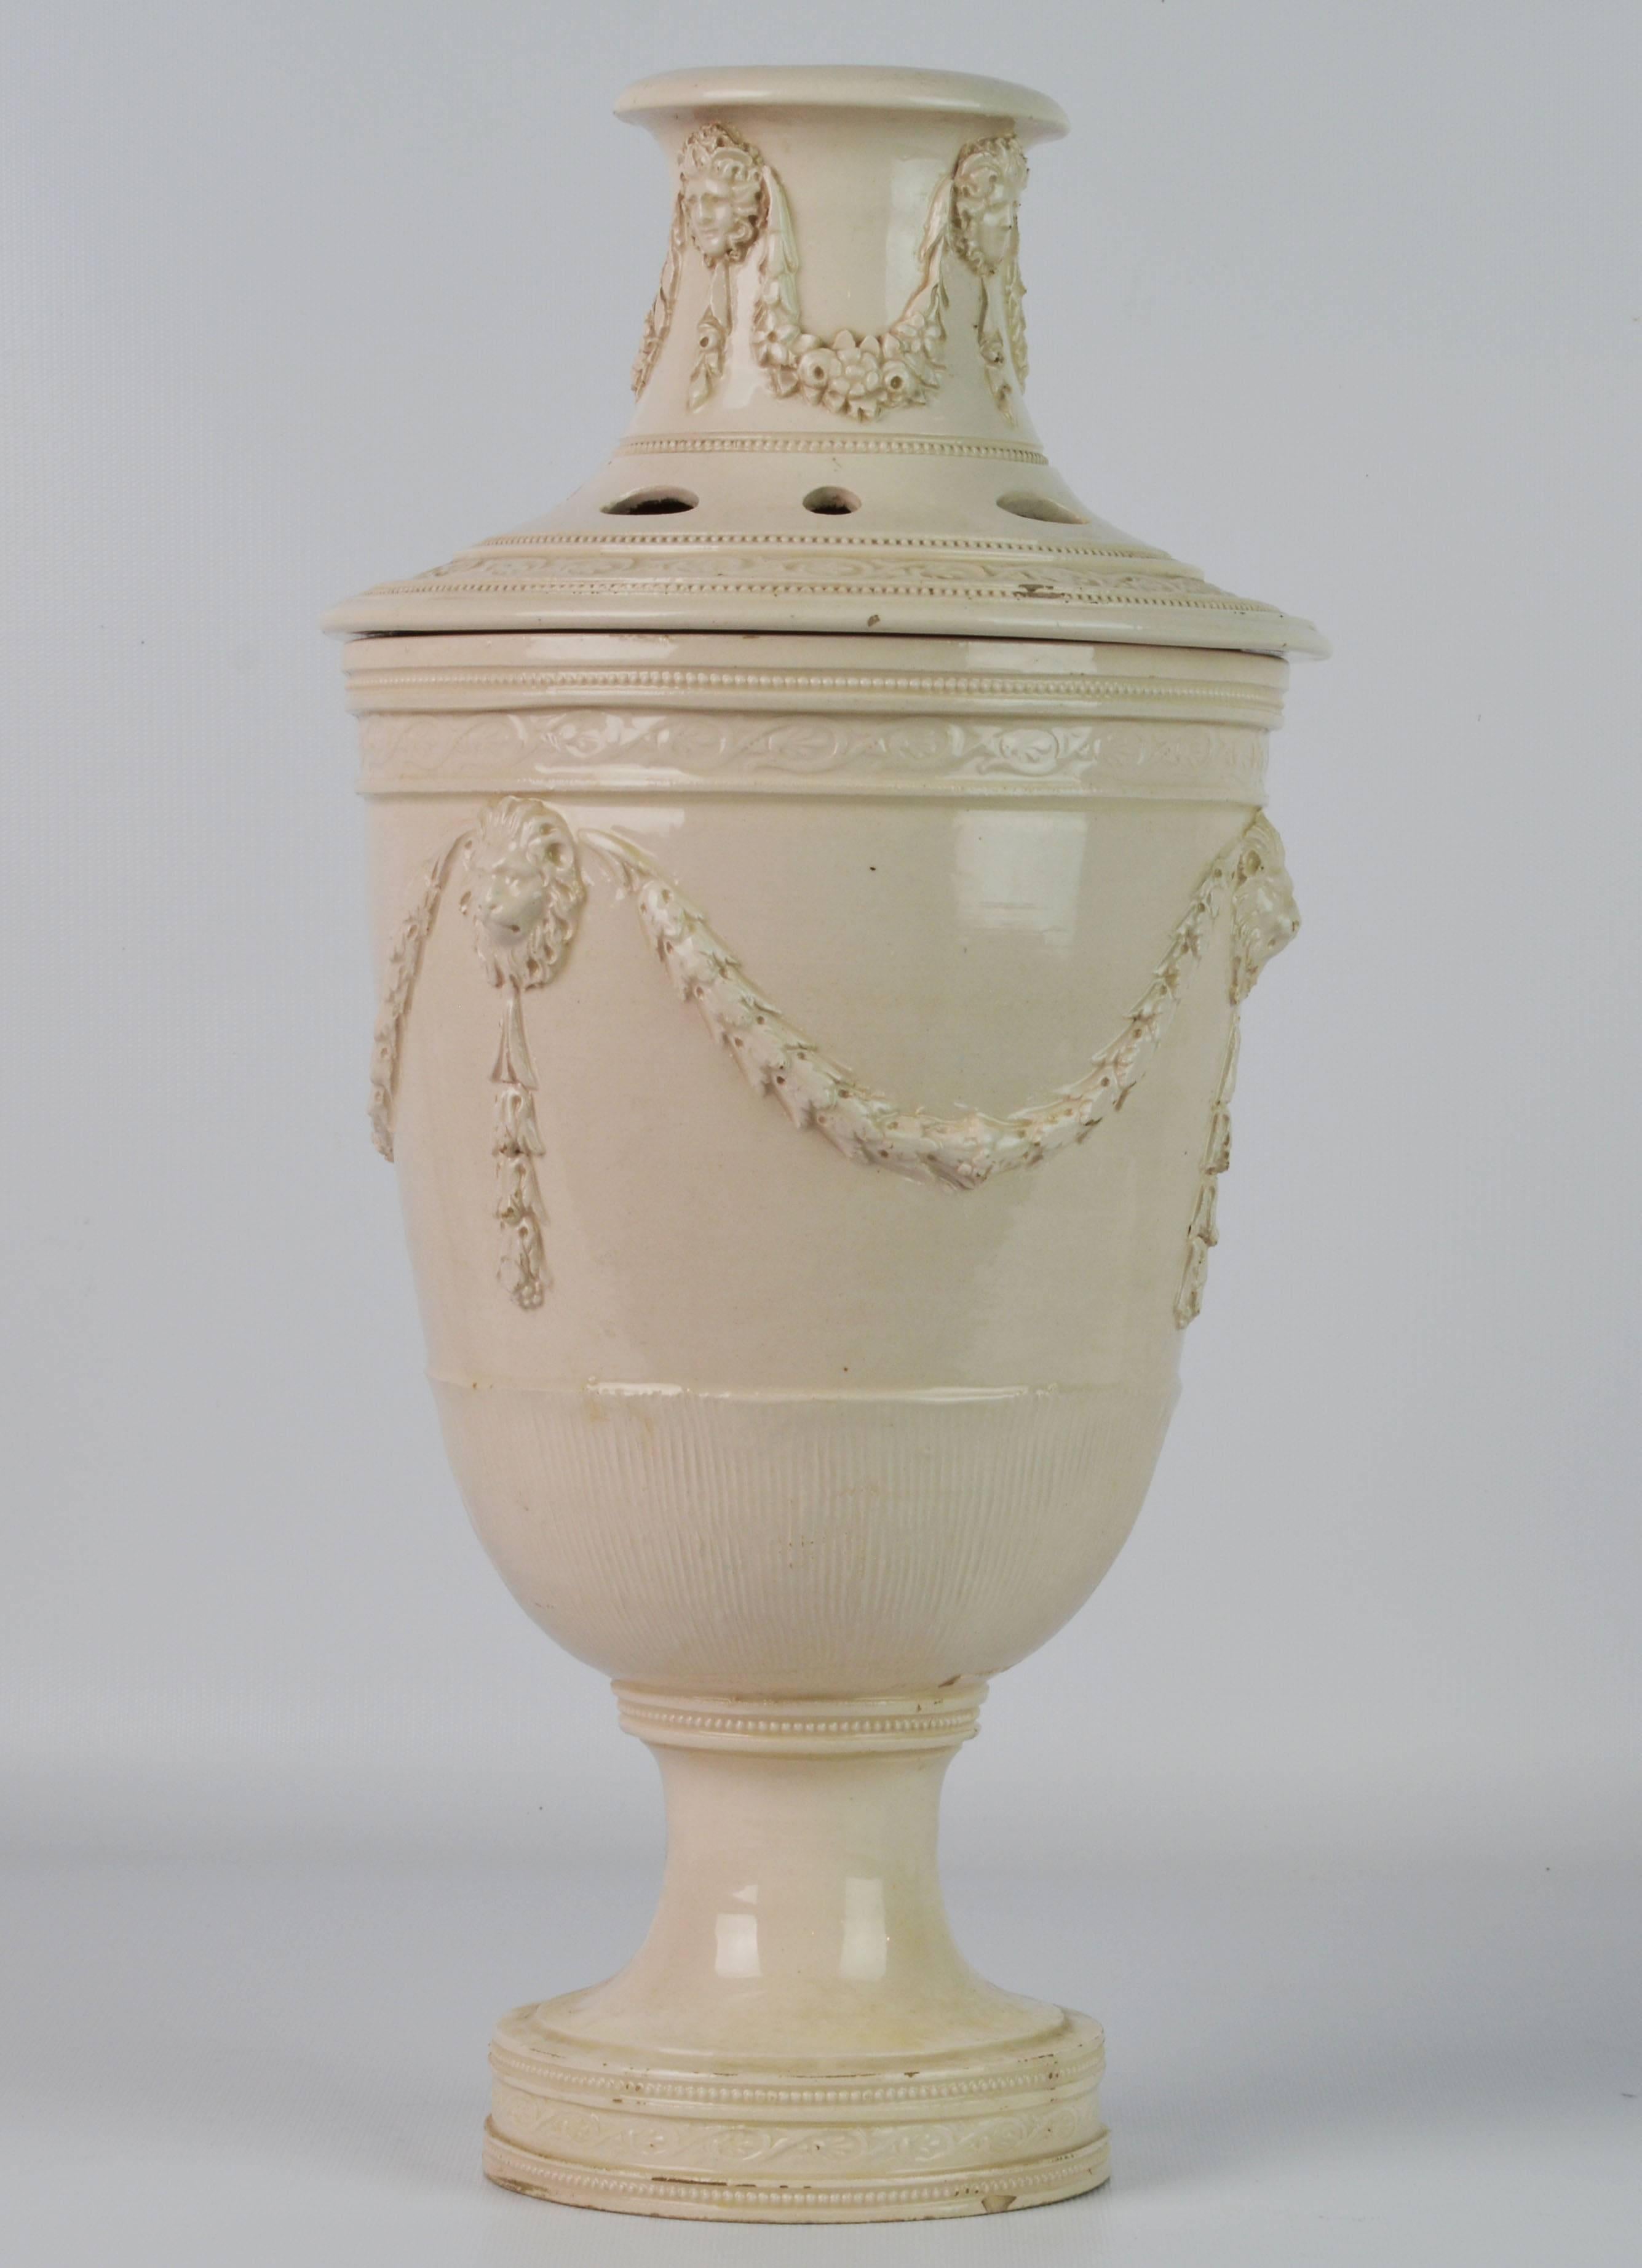 Georgian Rare 18th Century Leeds Cream Ware Covered Potpourri Jar or Urn